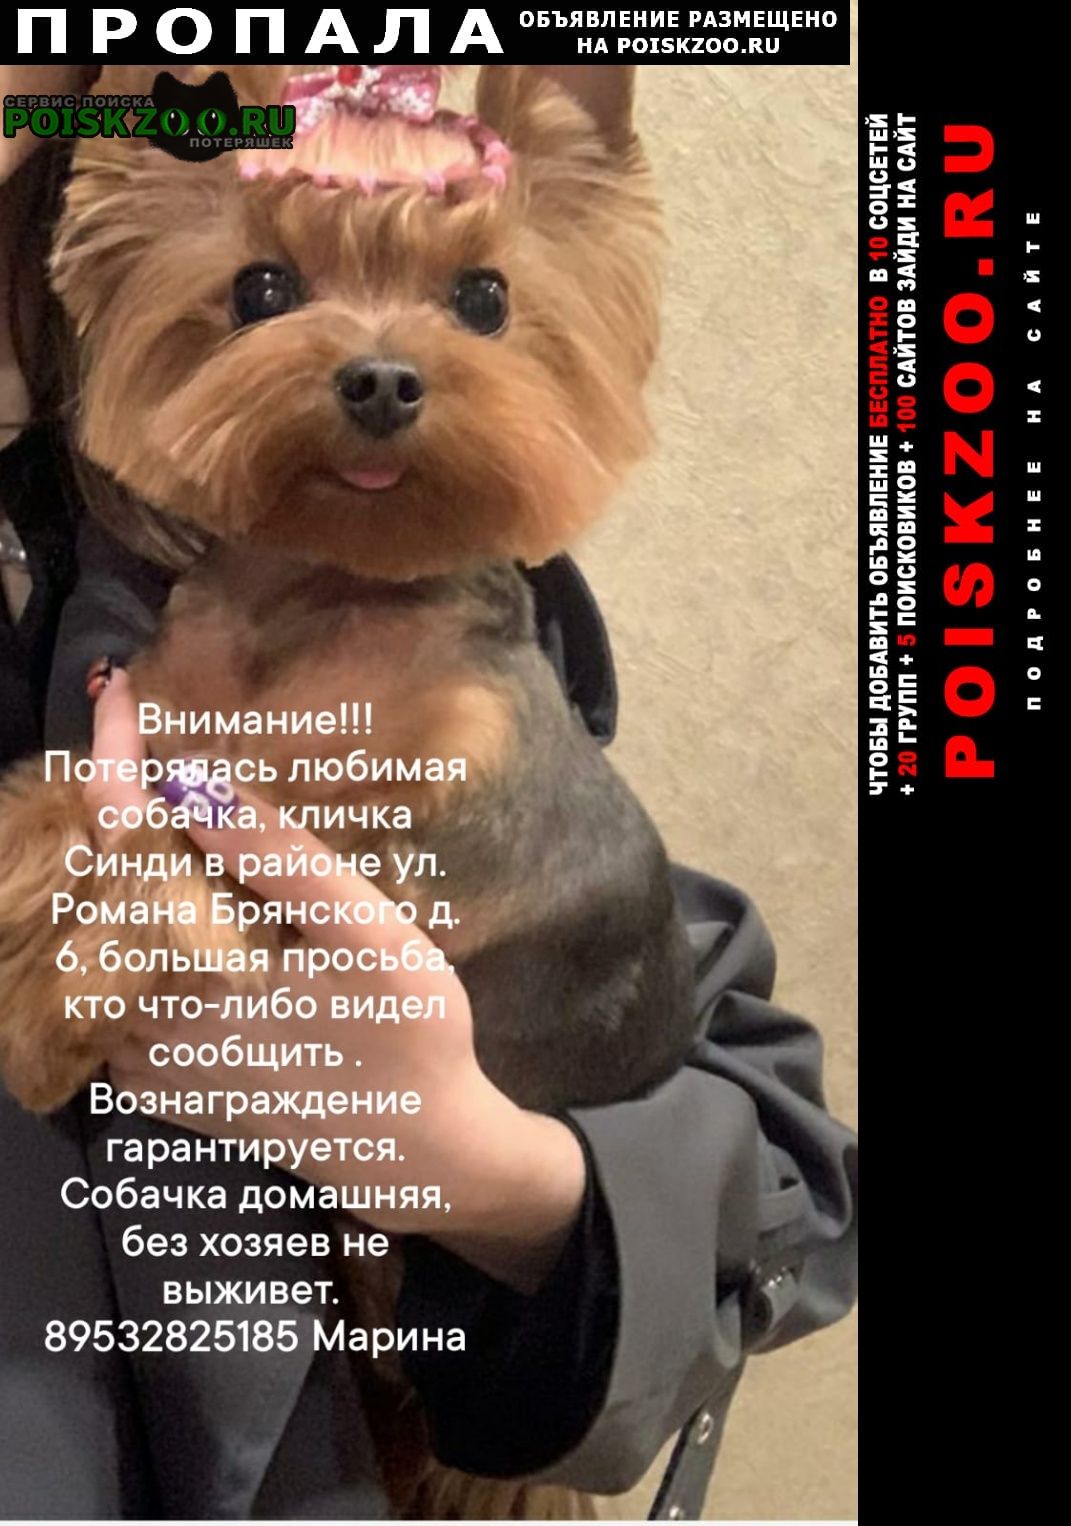 Пропала собака помогите пожалуйста найти члена семьи Брянск